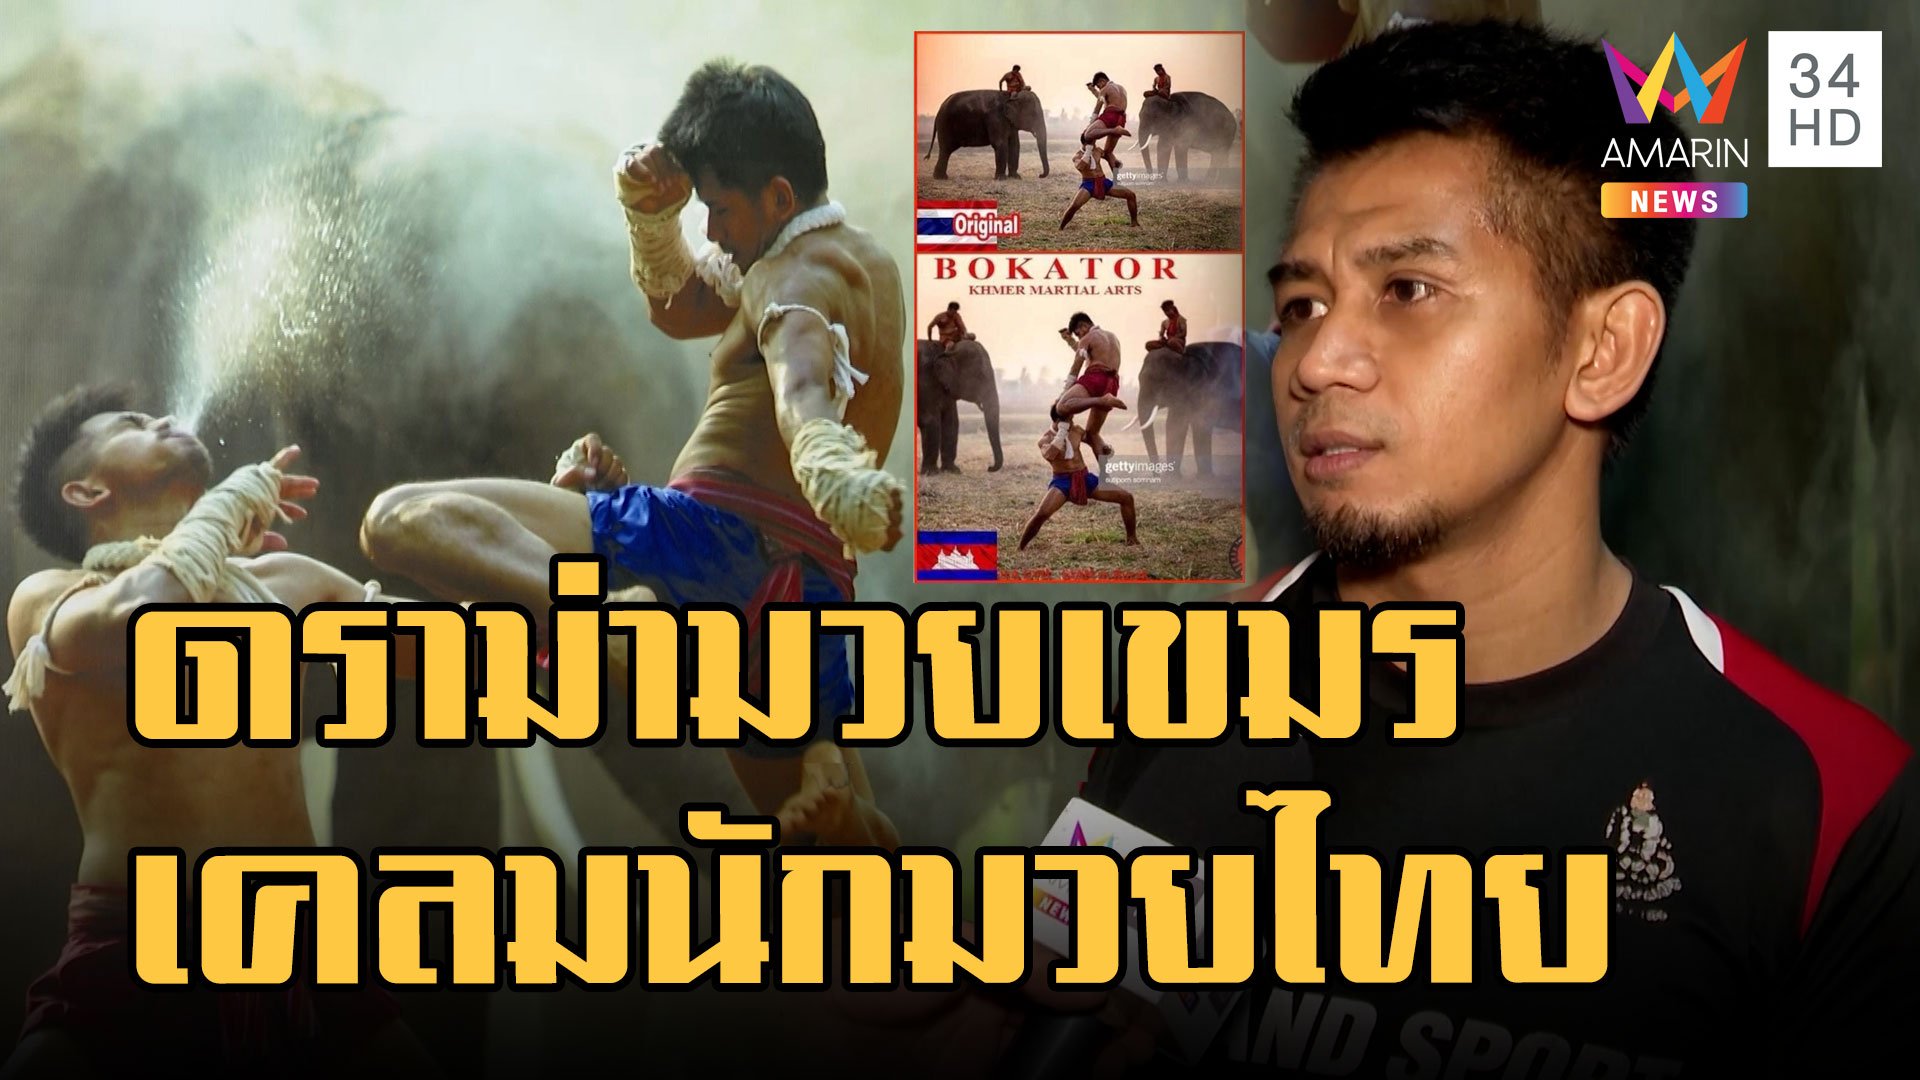 "กุน ขแมร์" มวยกัมพูชา เคลมต้นฉบับมวยไทย บัวขาวโต้เป็นคนไทย | ข่าวอรุณอมรินทร์ | 26 ม.ค. 66 | AMARIN TVHD34